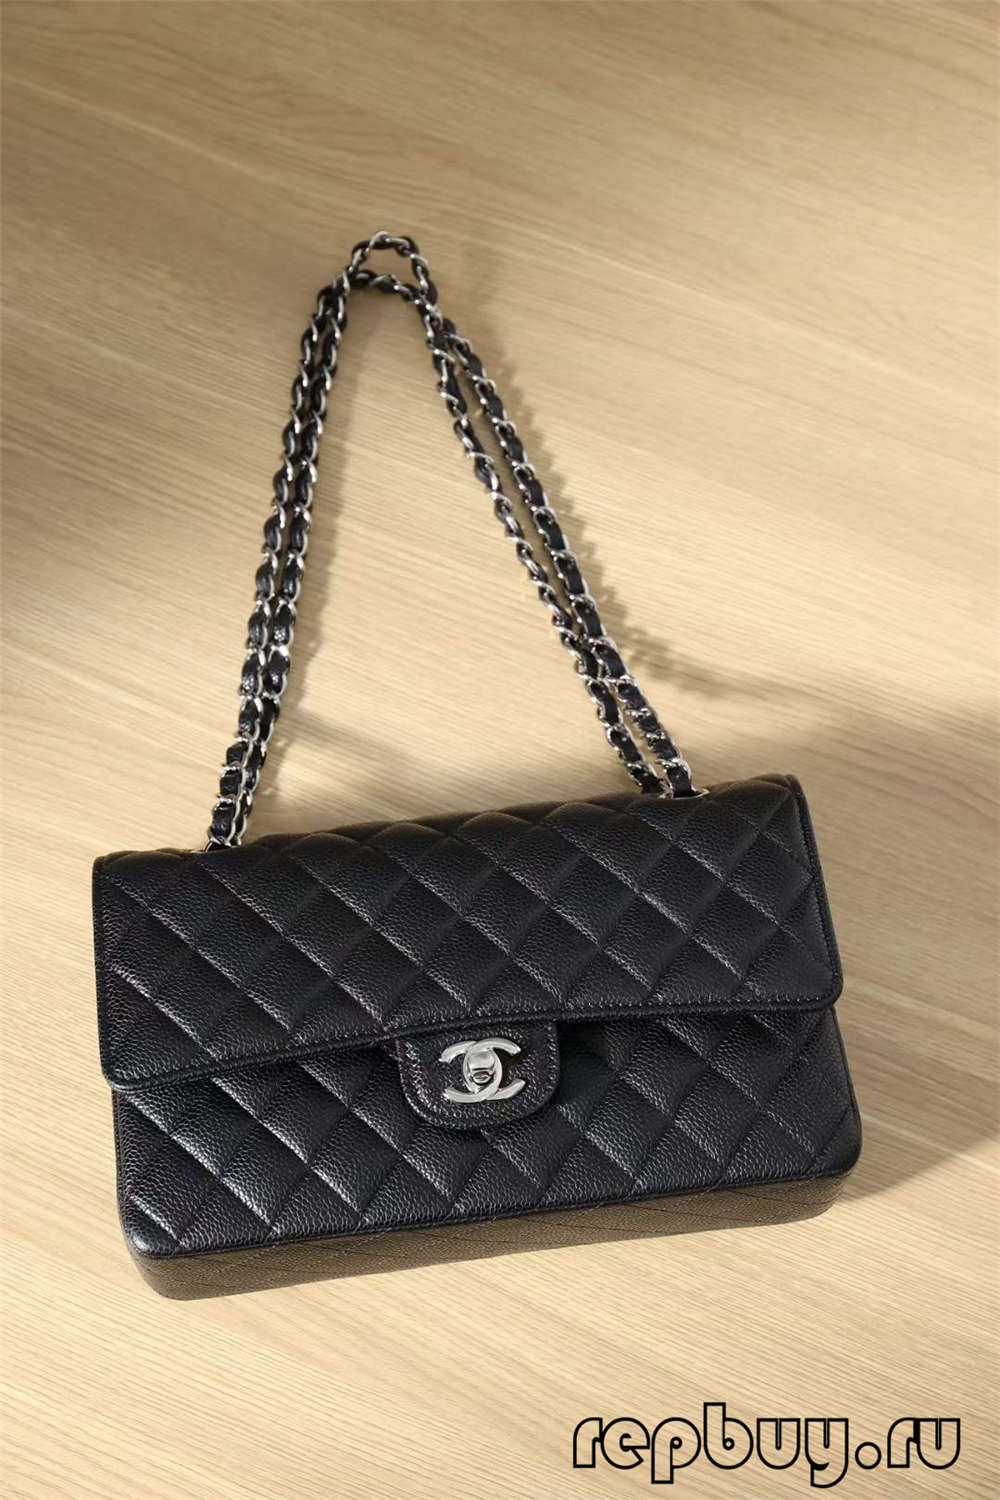 Nejlepší falešná kabelka Chanel vyrobená ze skutečné kůže!! Chanel Classic Flap replika-nejlepší kvalita falešná Louis Vuitton taška online obchod, replika designer bag ru